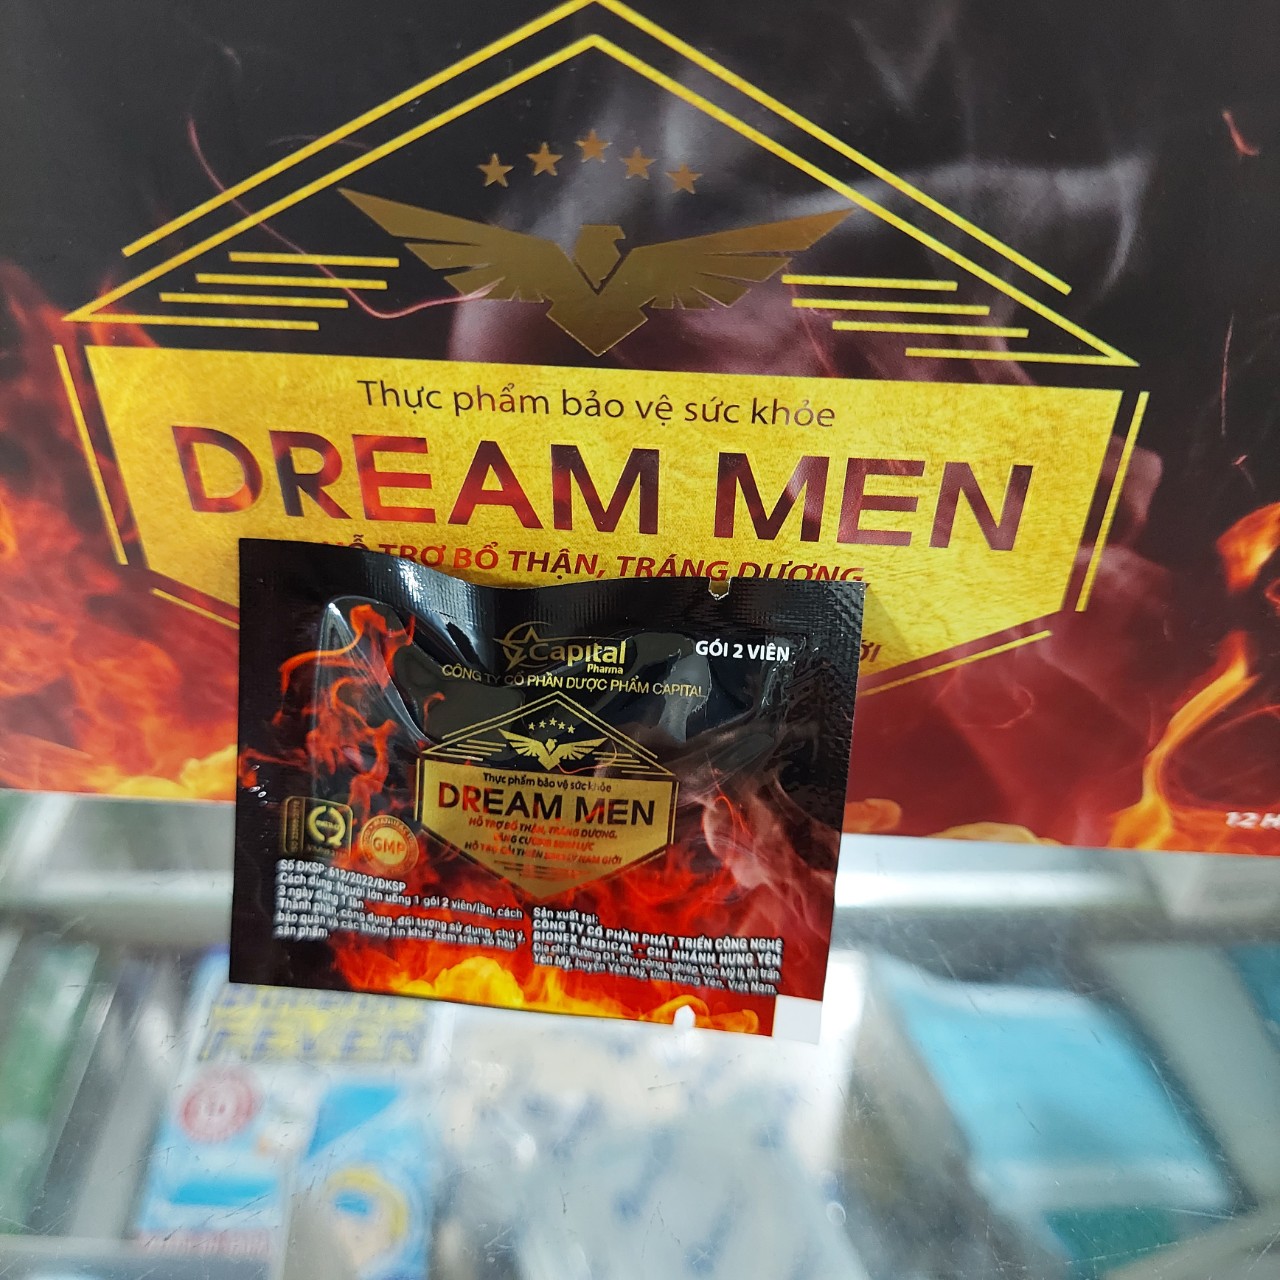 Dream men (tương tự Eva Dream) 1 gói/ 2 viên